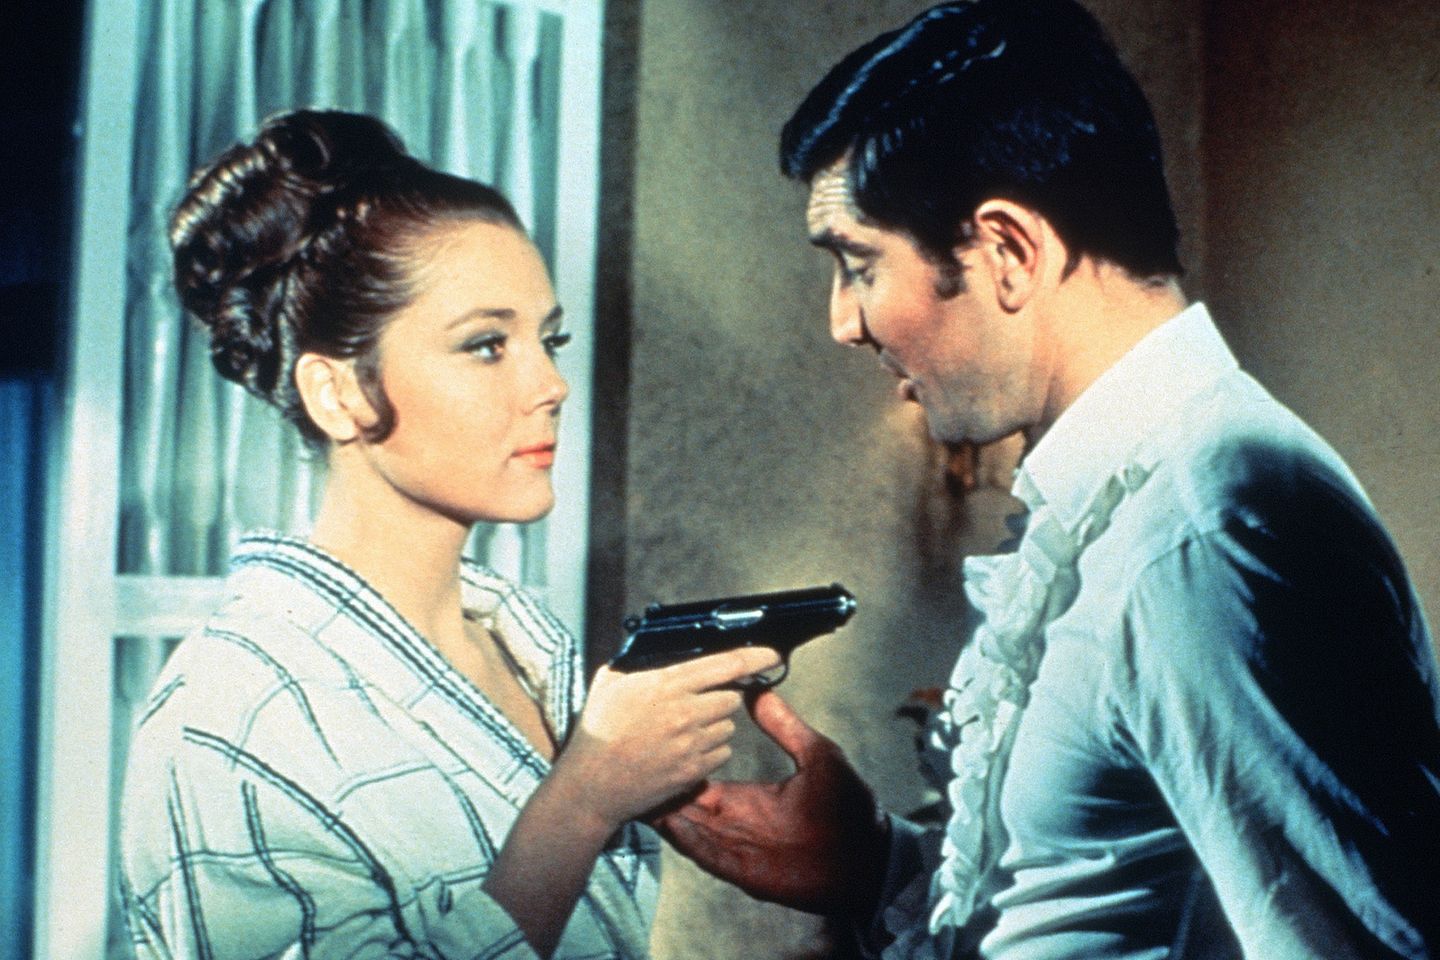 Die klassische Sixties-Hochsteckfrisur mit Riesen-Dutt von Diana Rigg als "Contessa Teresa di Vincenzo" wirkt bombenfest. Sie spielte 1969 an der Seite vom damaligen Bond-Darsteller George Lazenby in "Im Geheimdienst Ihrer Majestät".